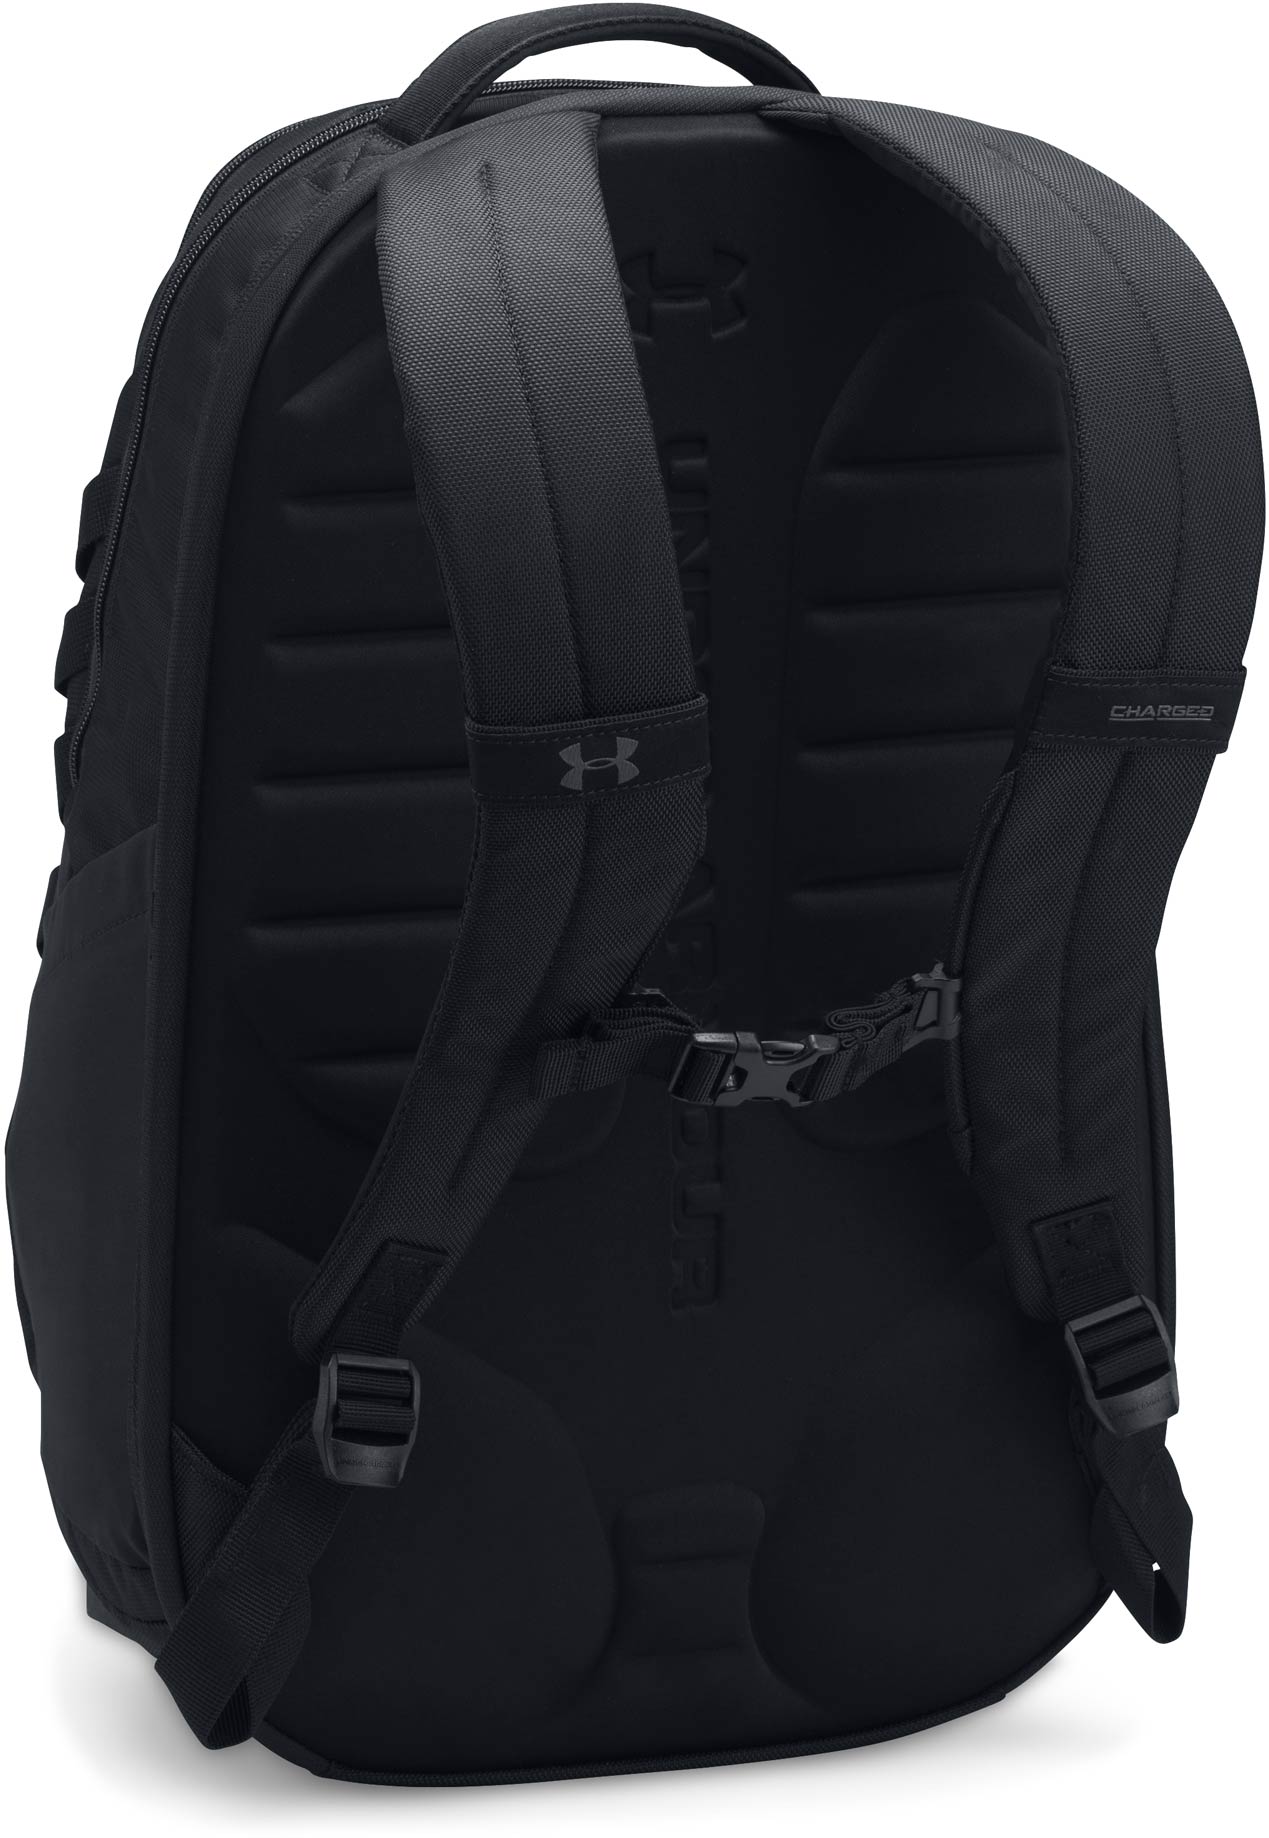 Elegant backpack